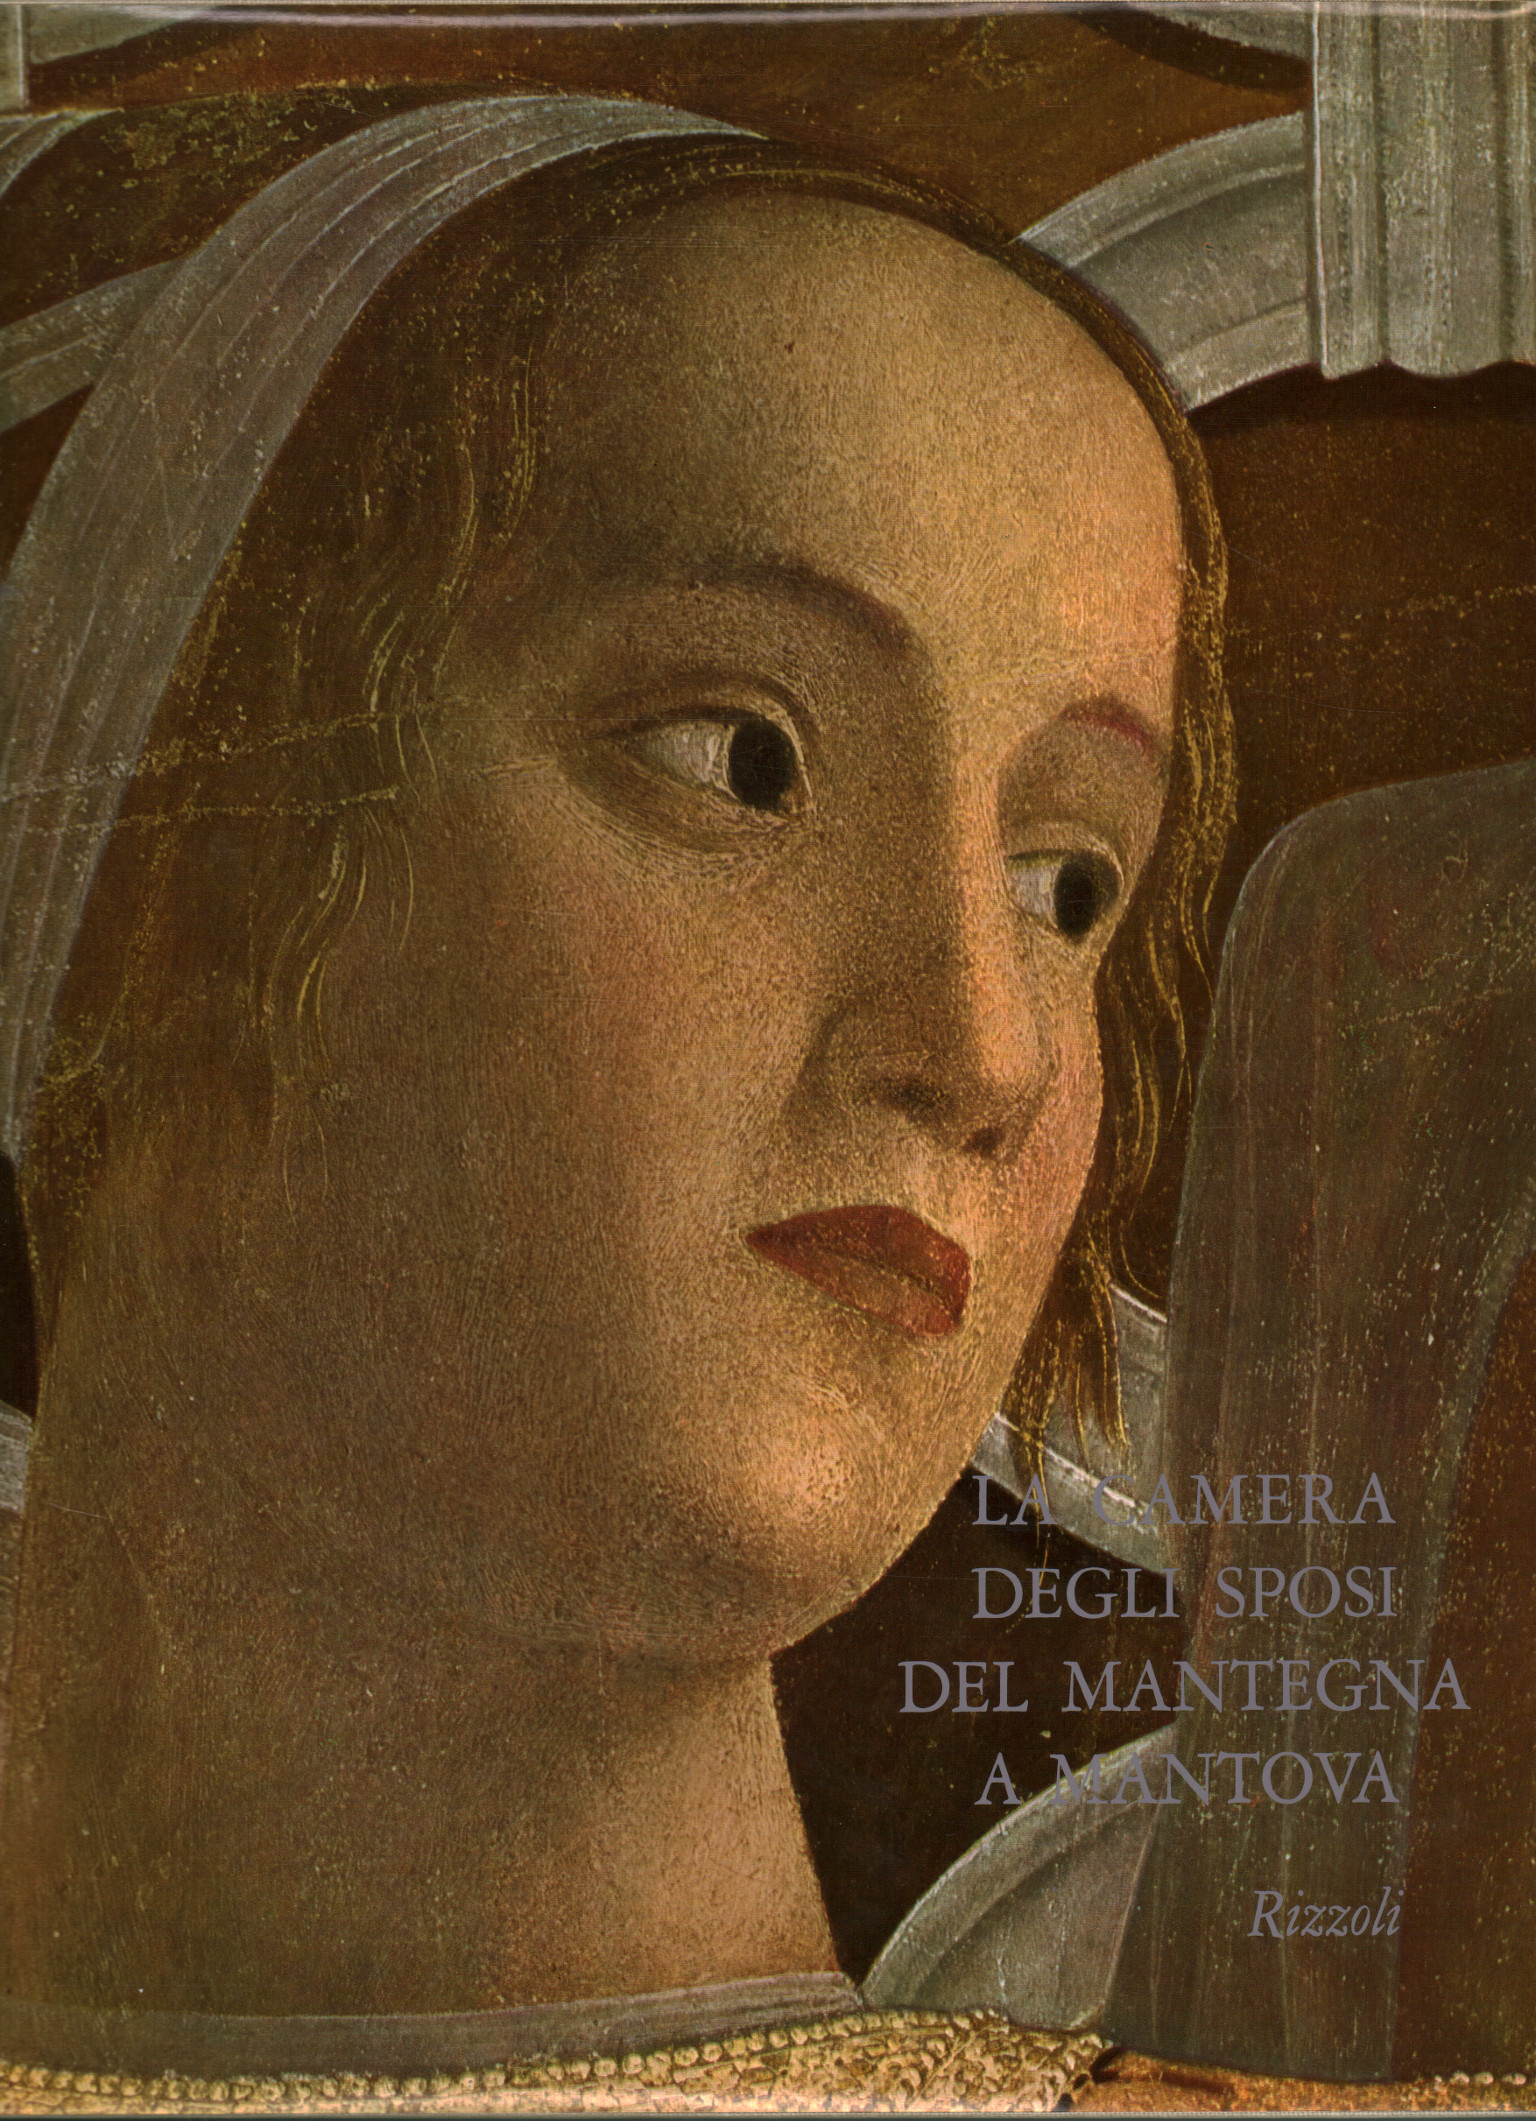 Mantegna's Bridal Chamber at%2,Mantegna's Bridal Chamber at%2,Mantegna's Bridal Chamber at%2